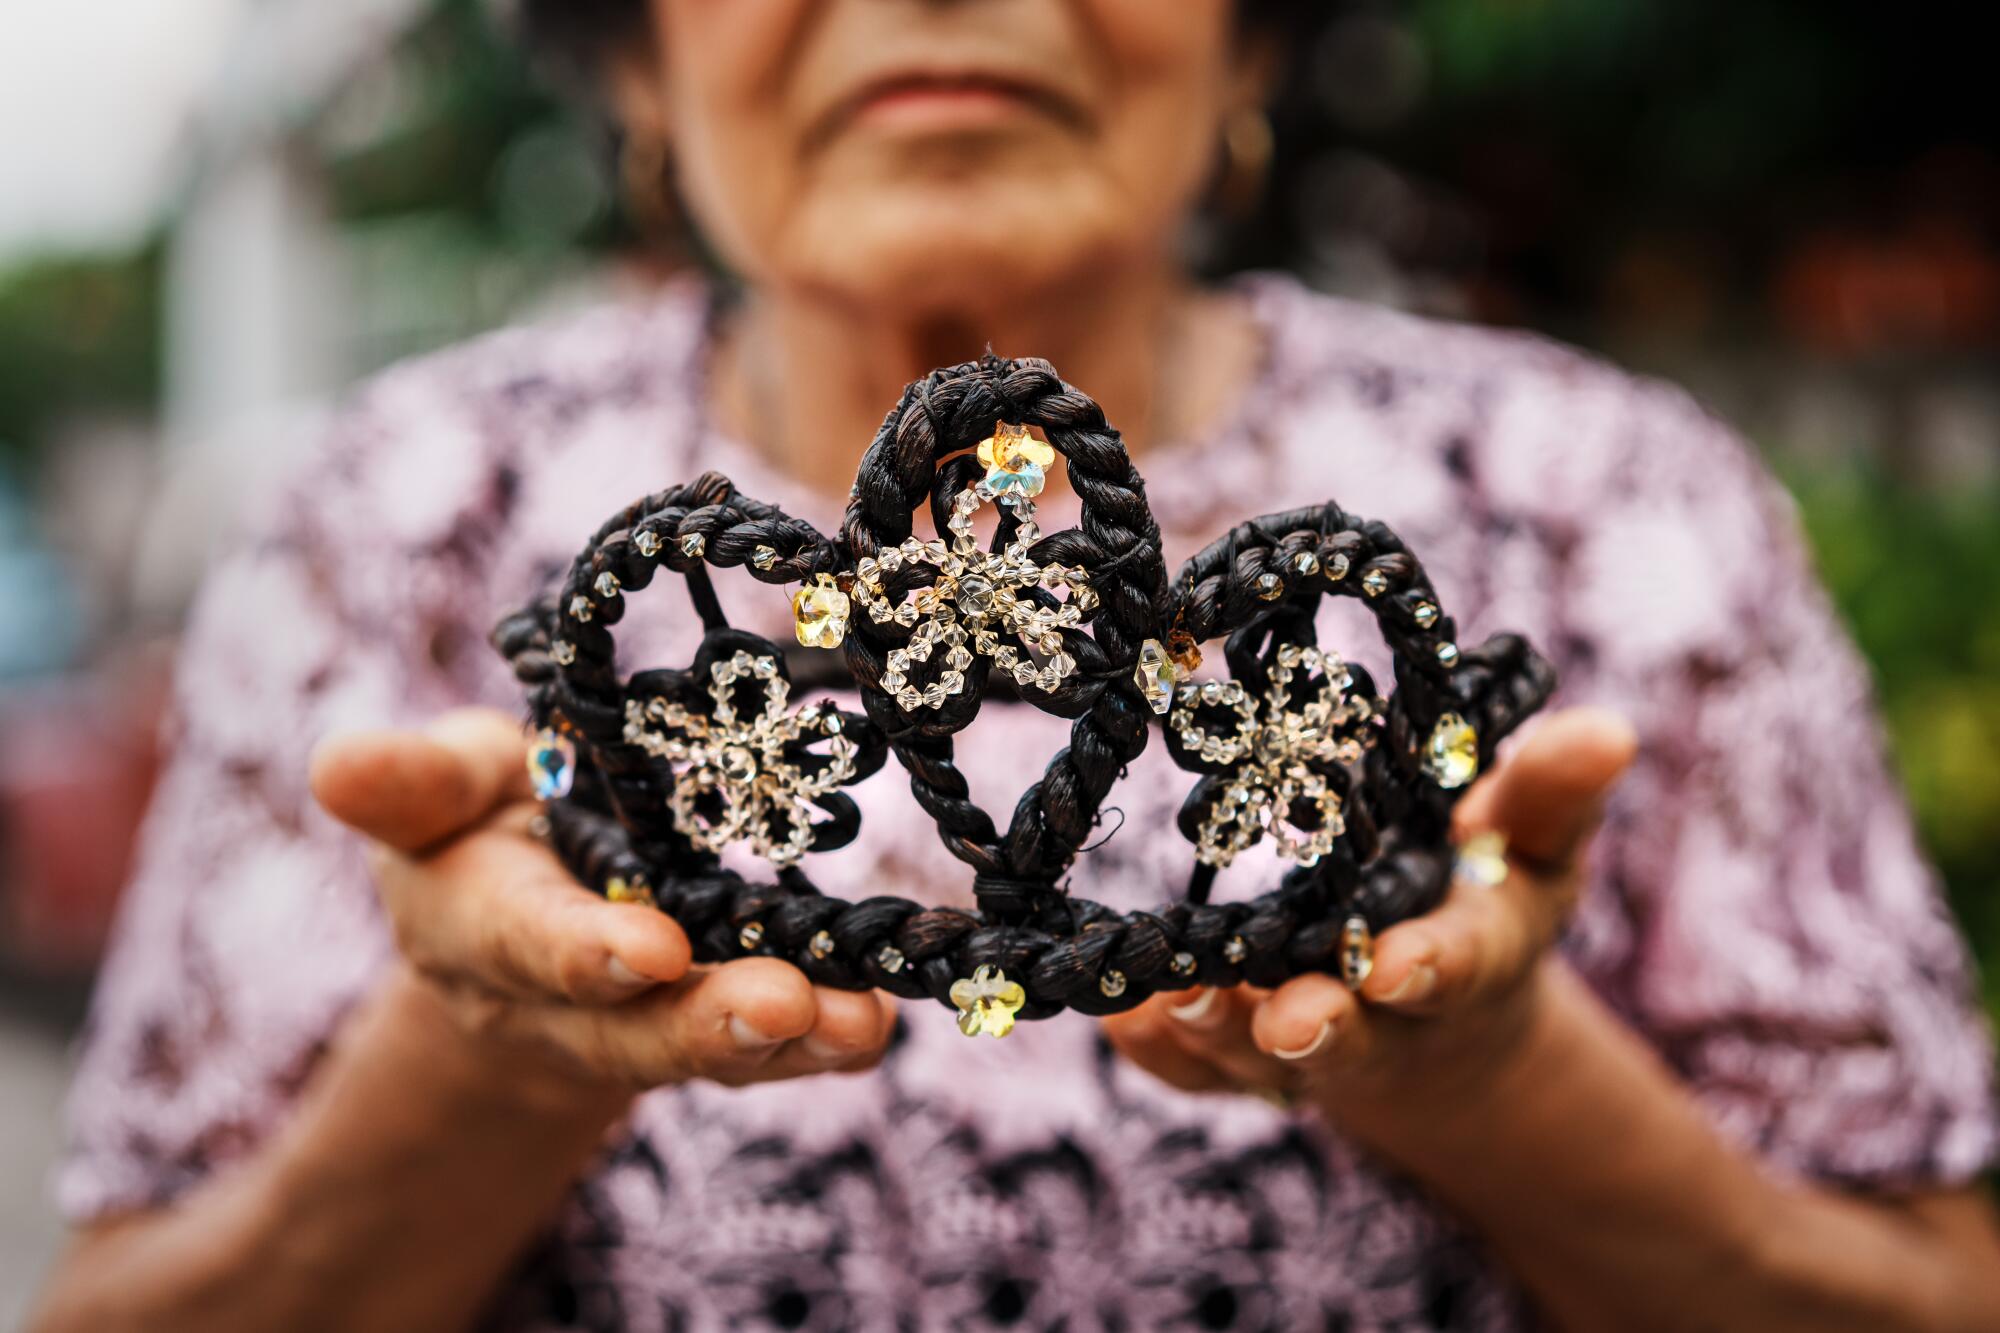 Alma Rosa González Herrera, 84, holds her vanilla crown in her hands.